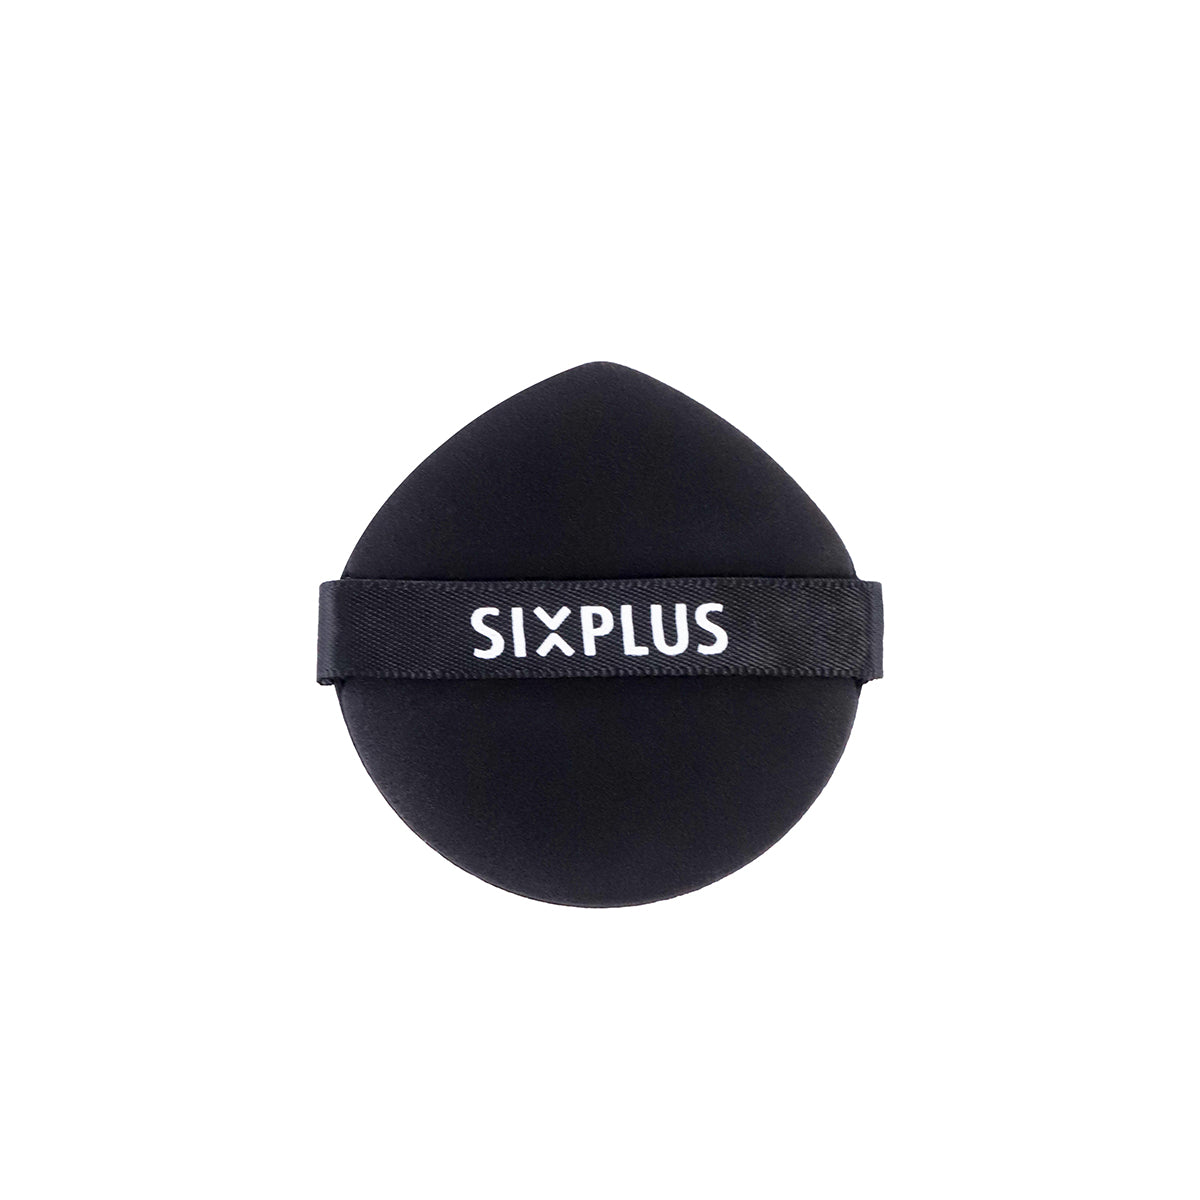 SIXPLUS スポンジパフ 2枚 ドロップ型 多機能